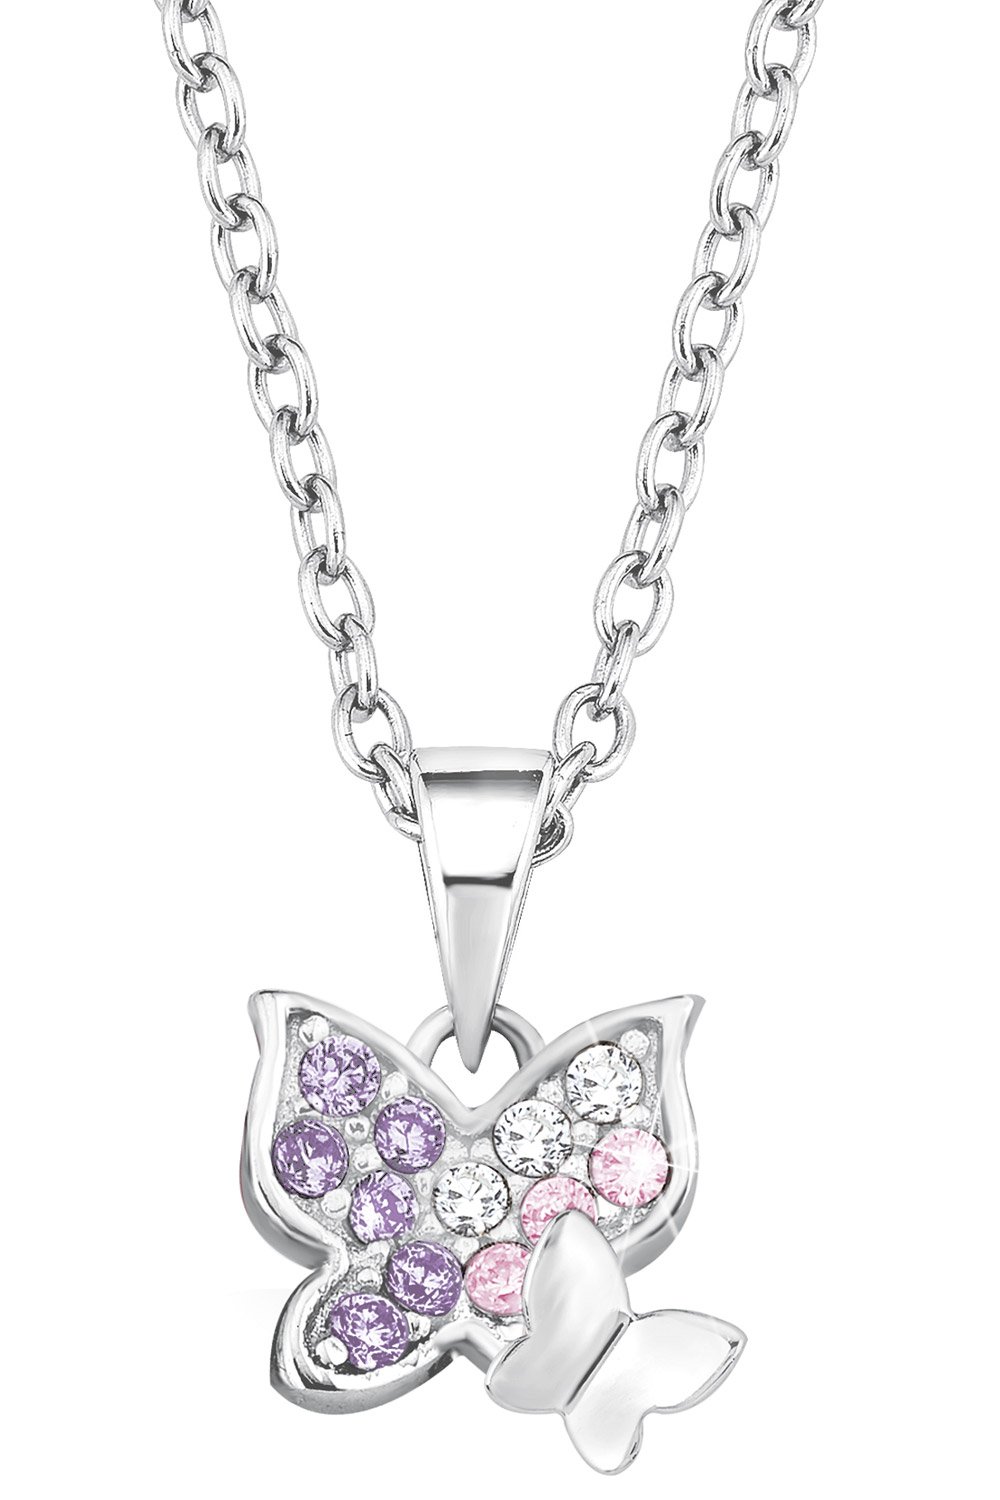 Schmetterlinge Prinzessin Silber-Halskette für Kinder 2021103 • Lillifee uhrcenter